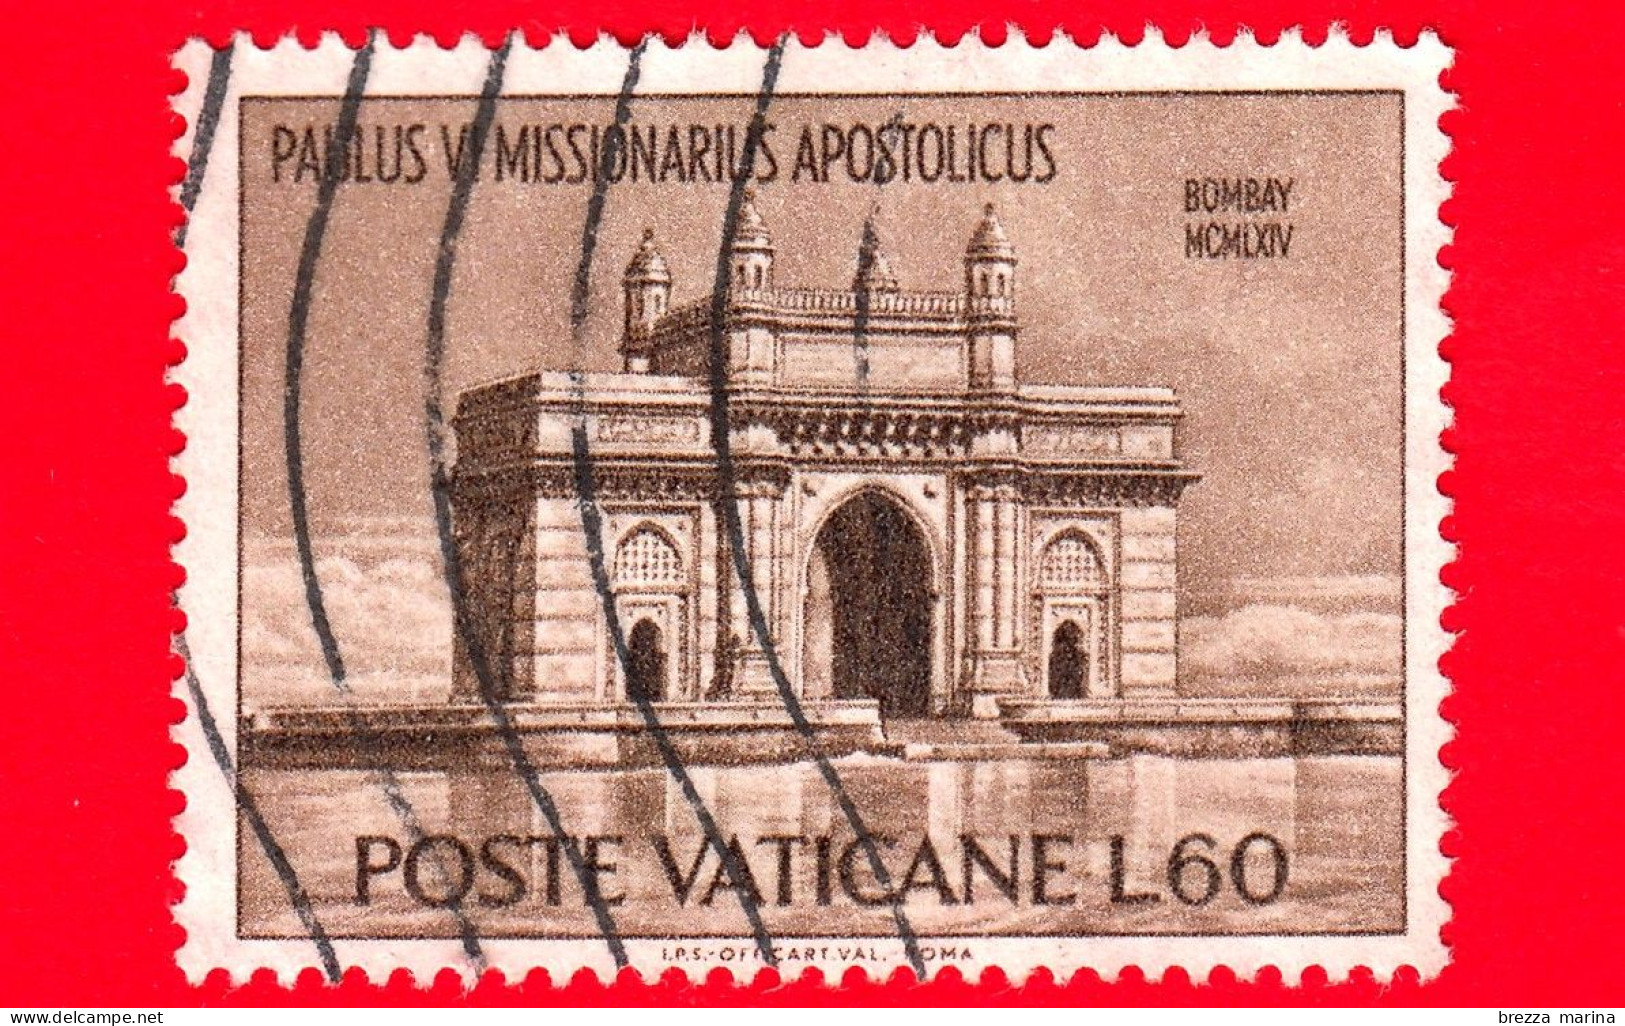 VATICANO  - Usato - 1964 - Viaggi Di Paolo VI In India - Porta Dell'India - Bombay - 60 - Usados